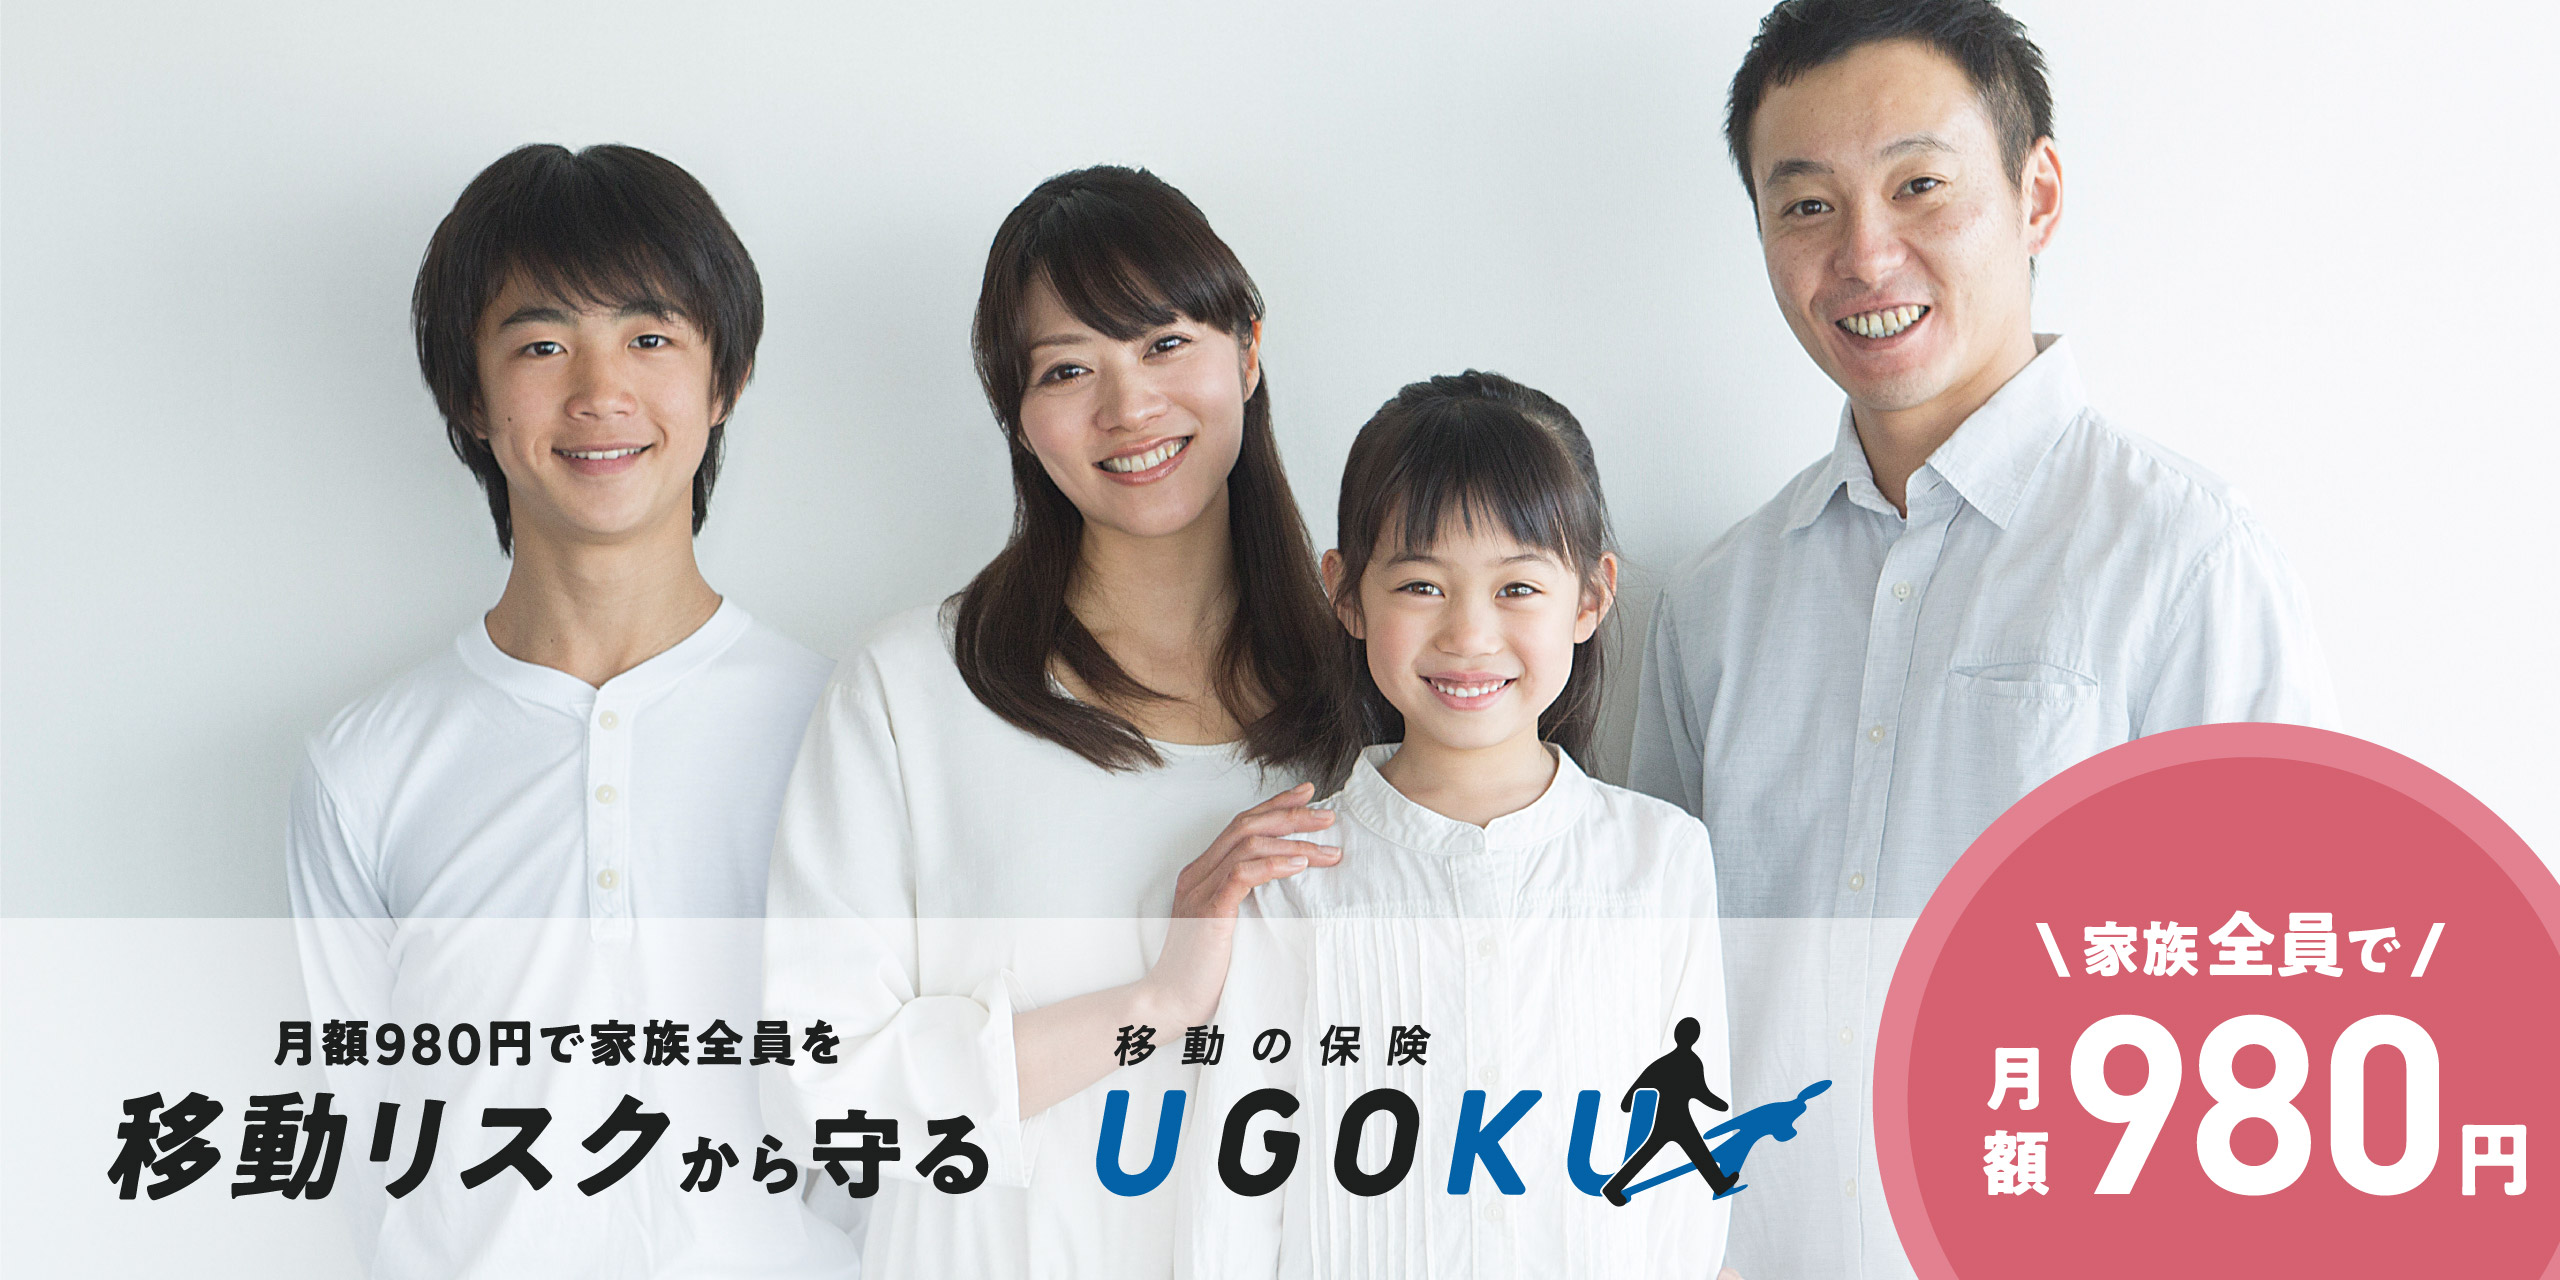 新商品「UGOKU」